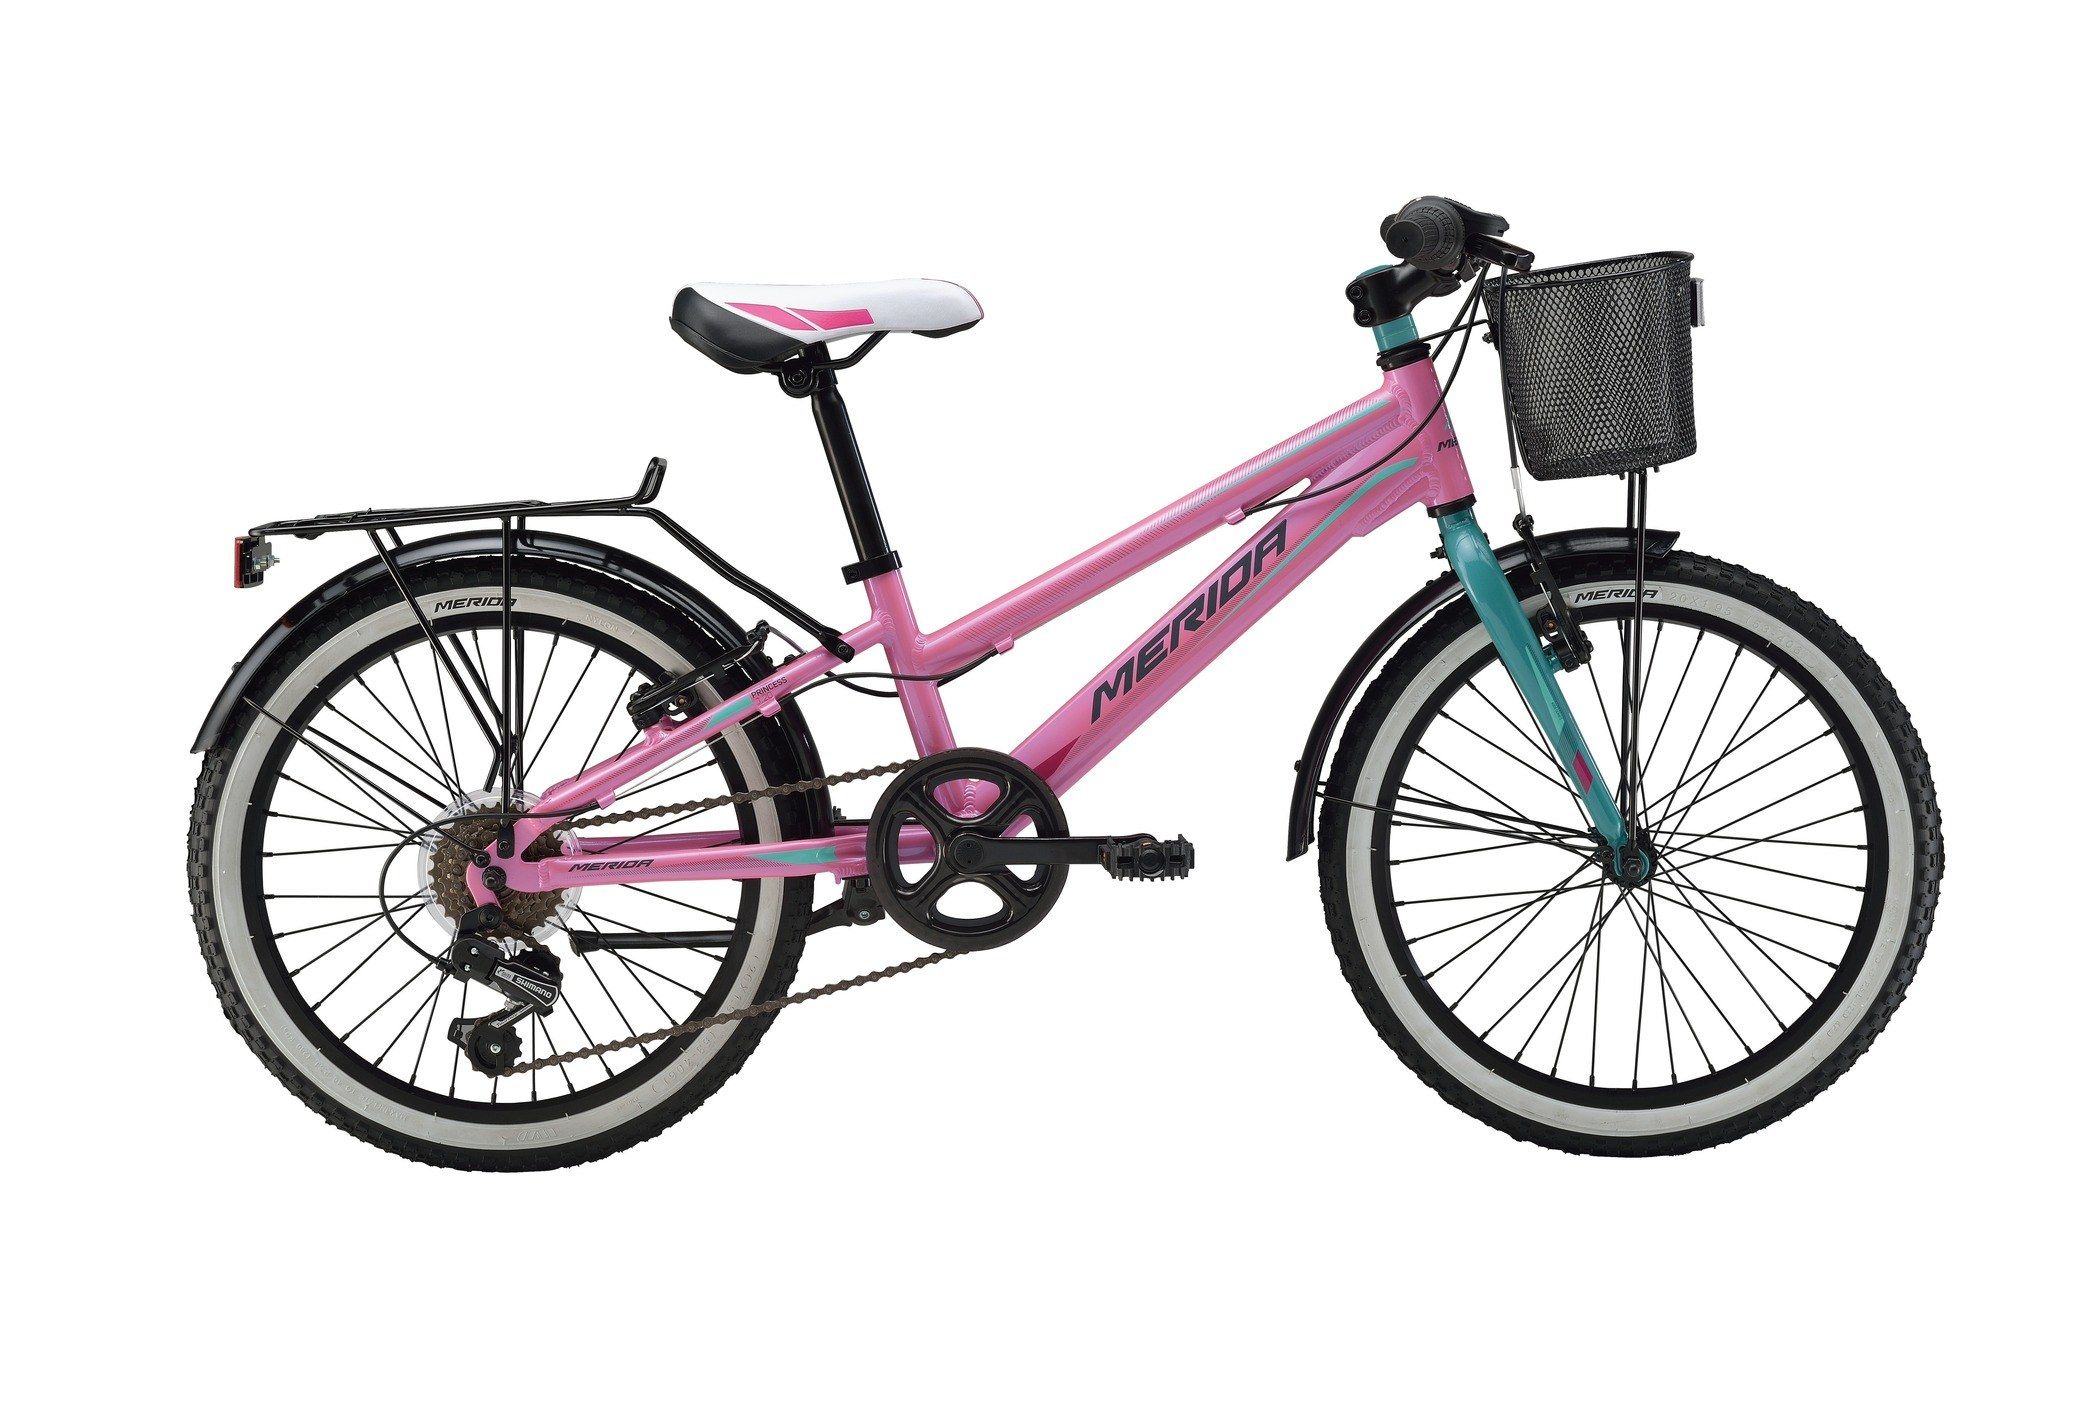  Велосипед трехколесный детский велосипед Merida Princess J20 6 spd 2016